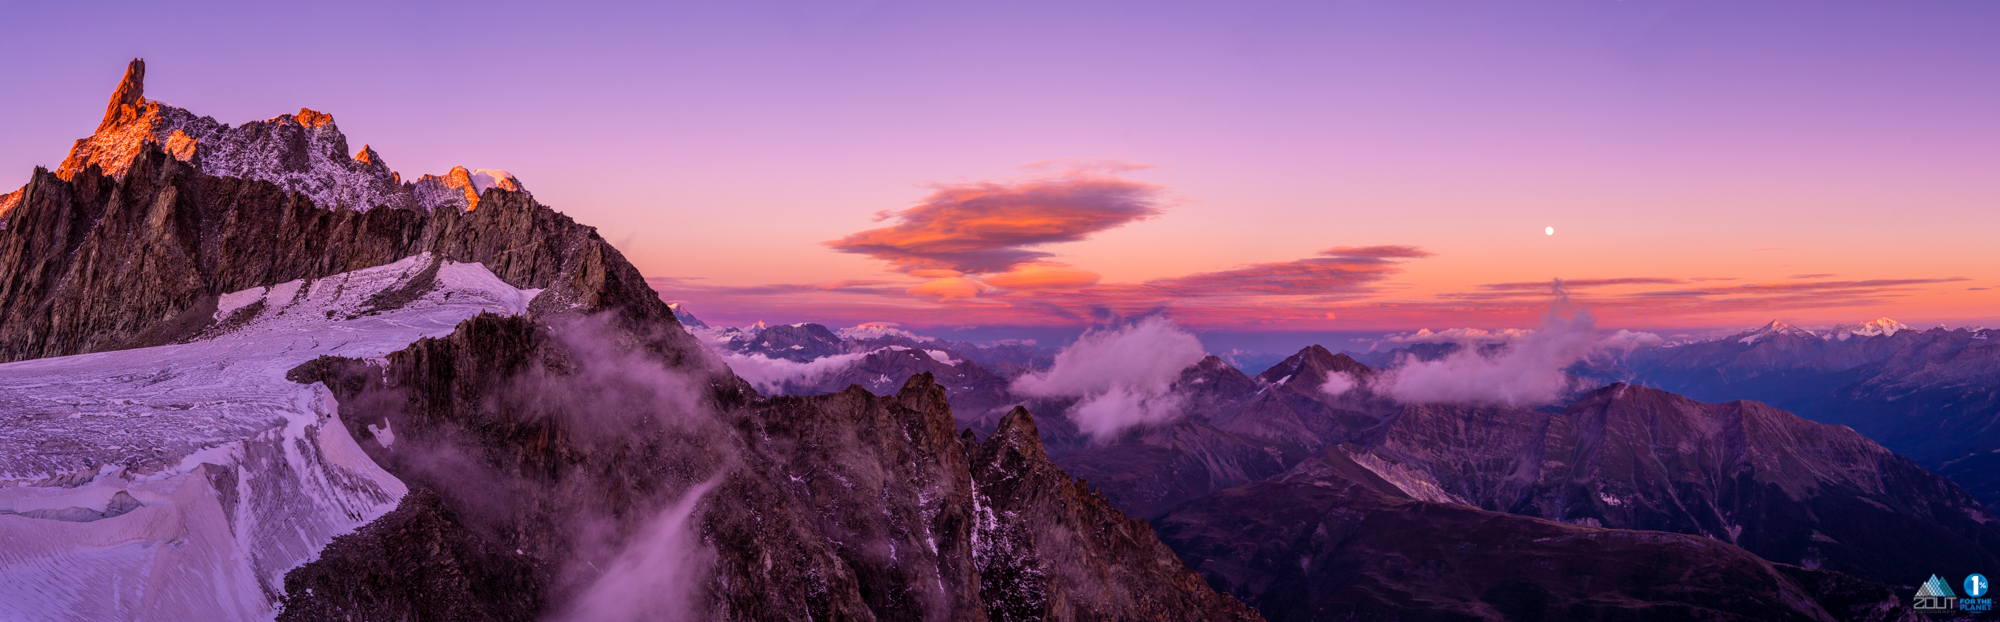 Sunset Alps Mt Blanc Bergbeklimmen foto